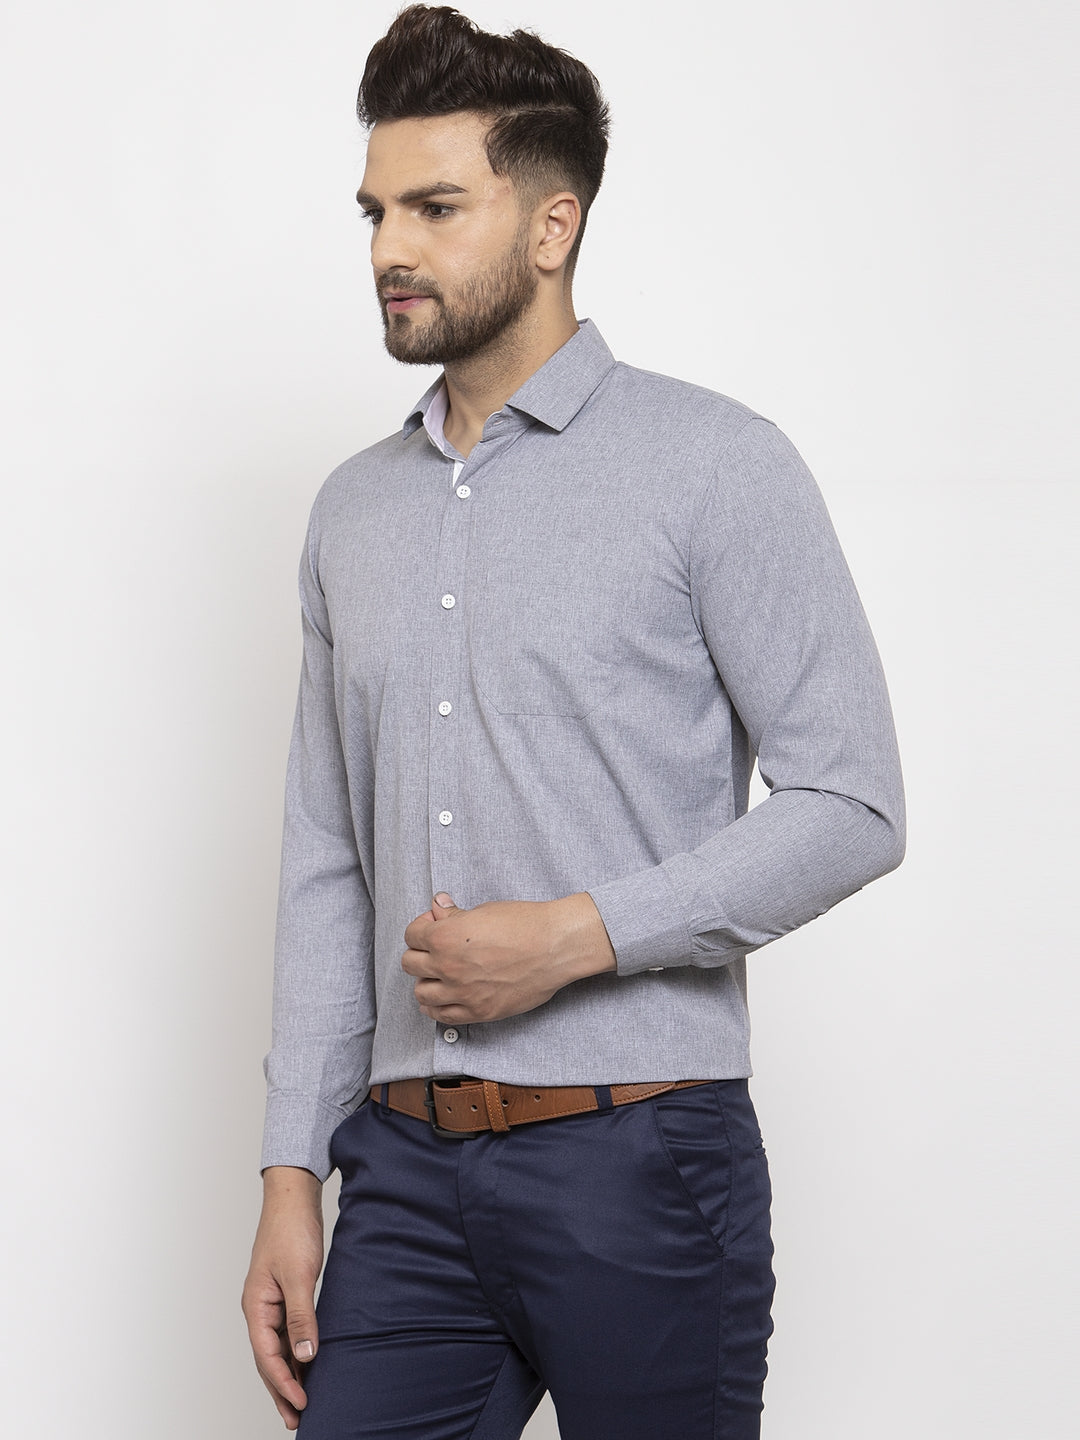 Men's Grey Formal Shirt with white detailing ( SF 419Grey ) - Jainish